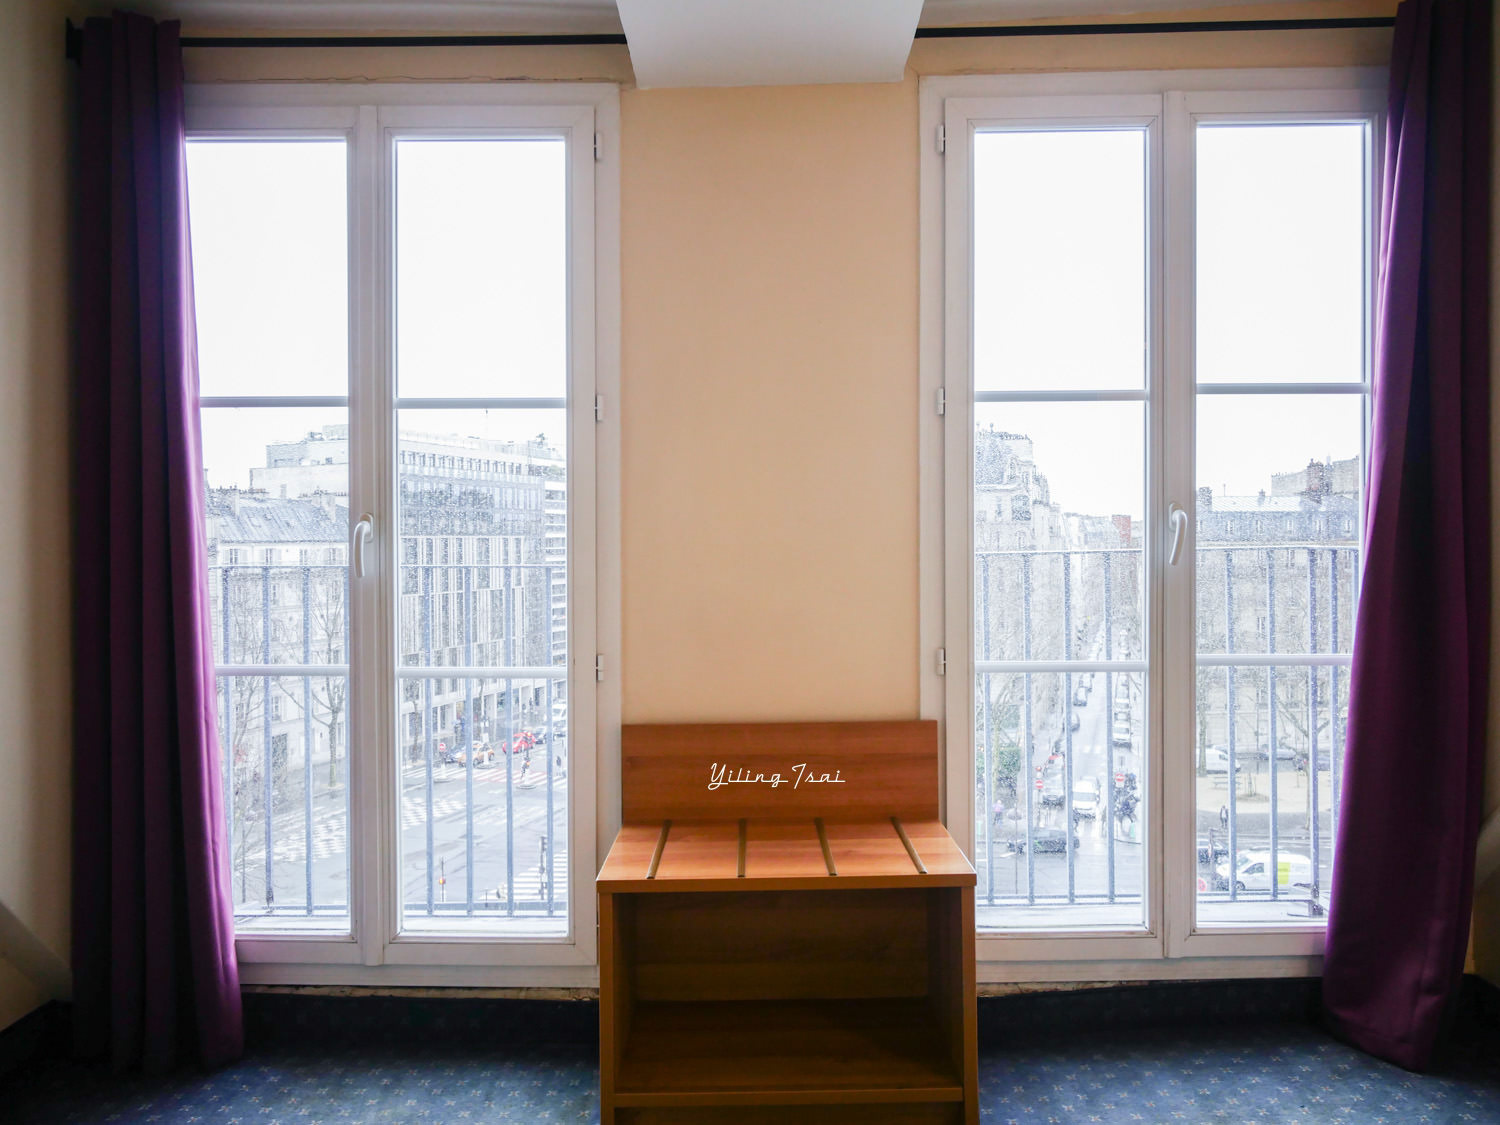 法國巴黎住宿推薦 Hotel Beauvoir 波伏瓦酒店 拉丁區交通便利三星飯店